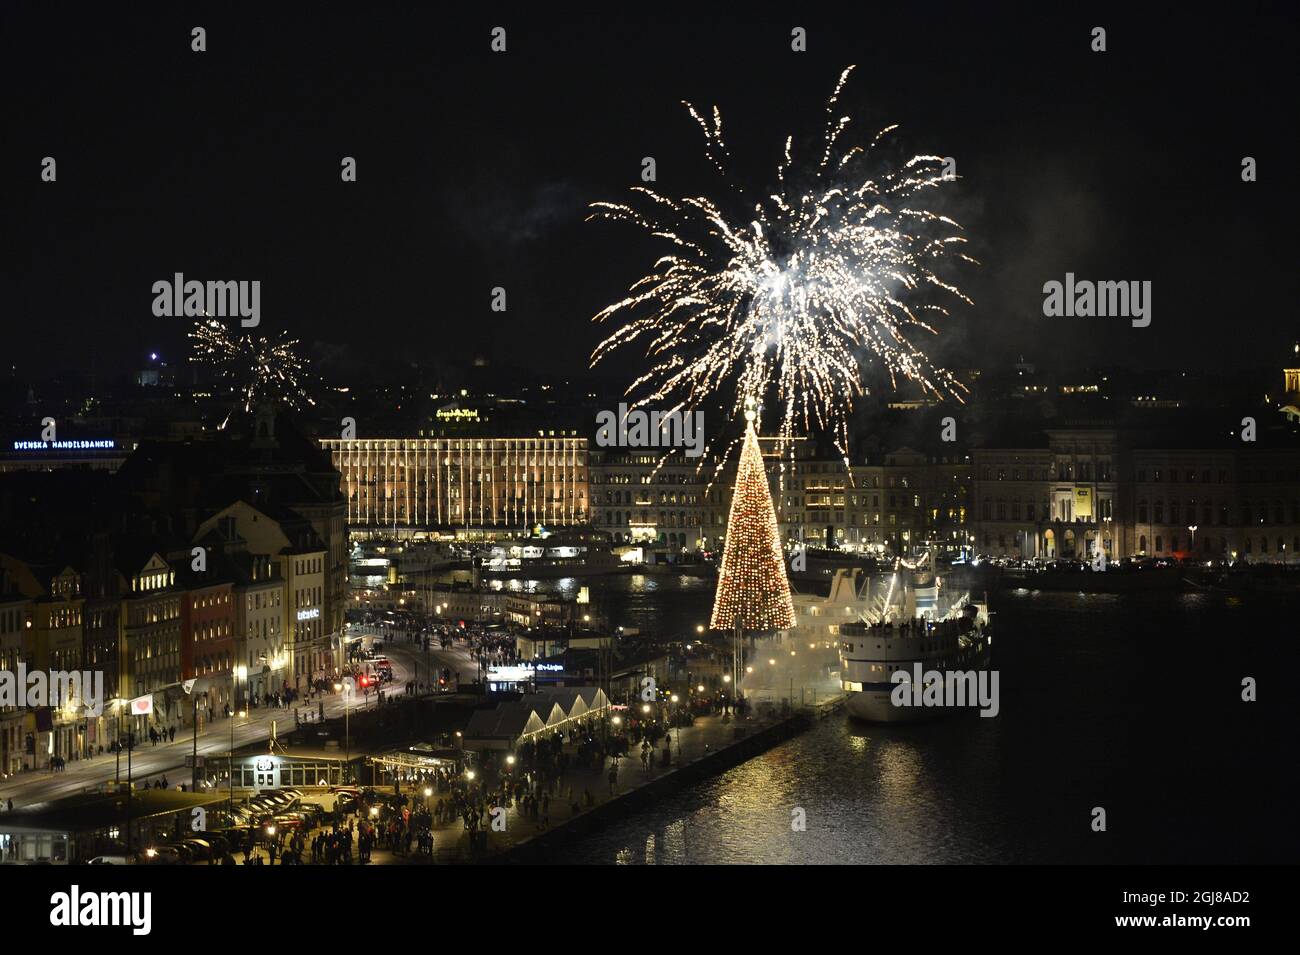 STOCCOLMA 20131231 Capodanno festeggiamenti con fuochi d'artificio sulla via Skeppsbron nel centro di Stoccolma a mezzanotte del 31 dicembre 2013. Foto Anders Wiklund / TT code 10040 Foto Stock